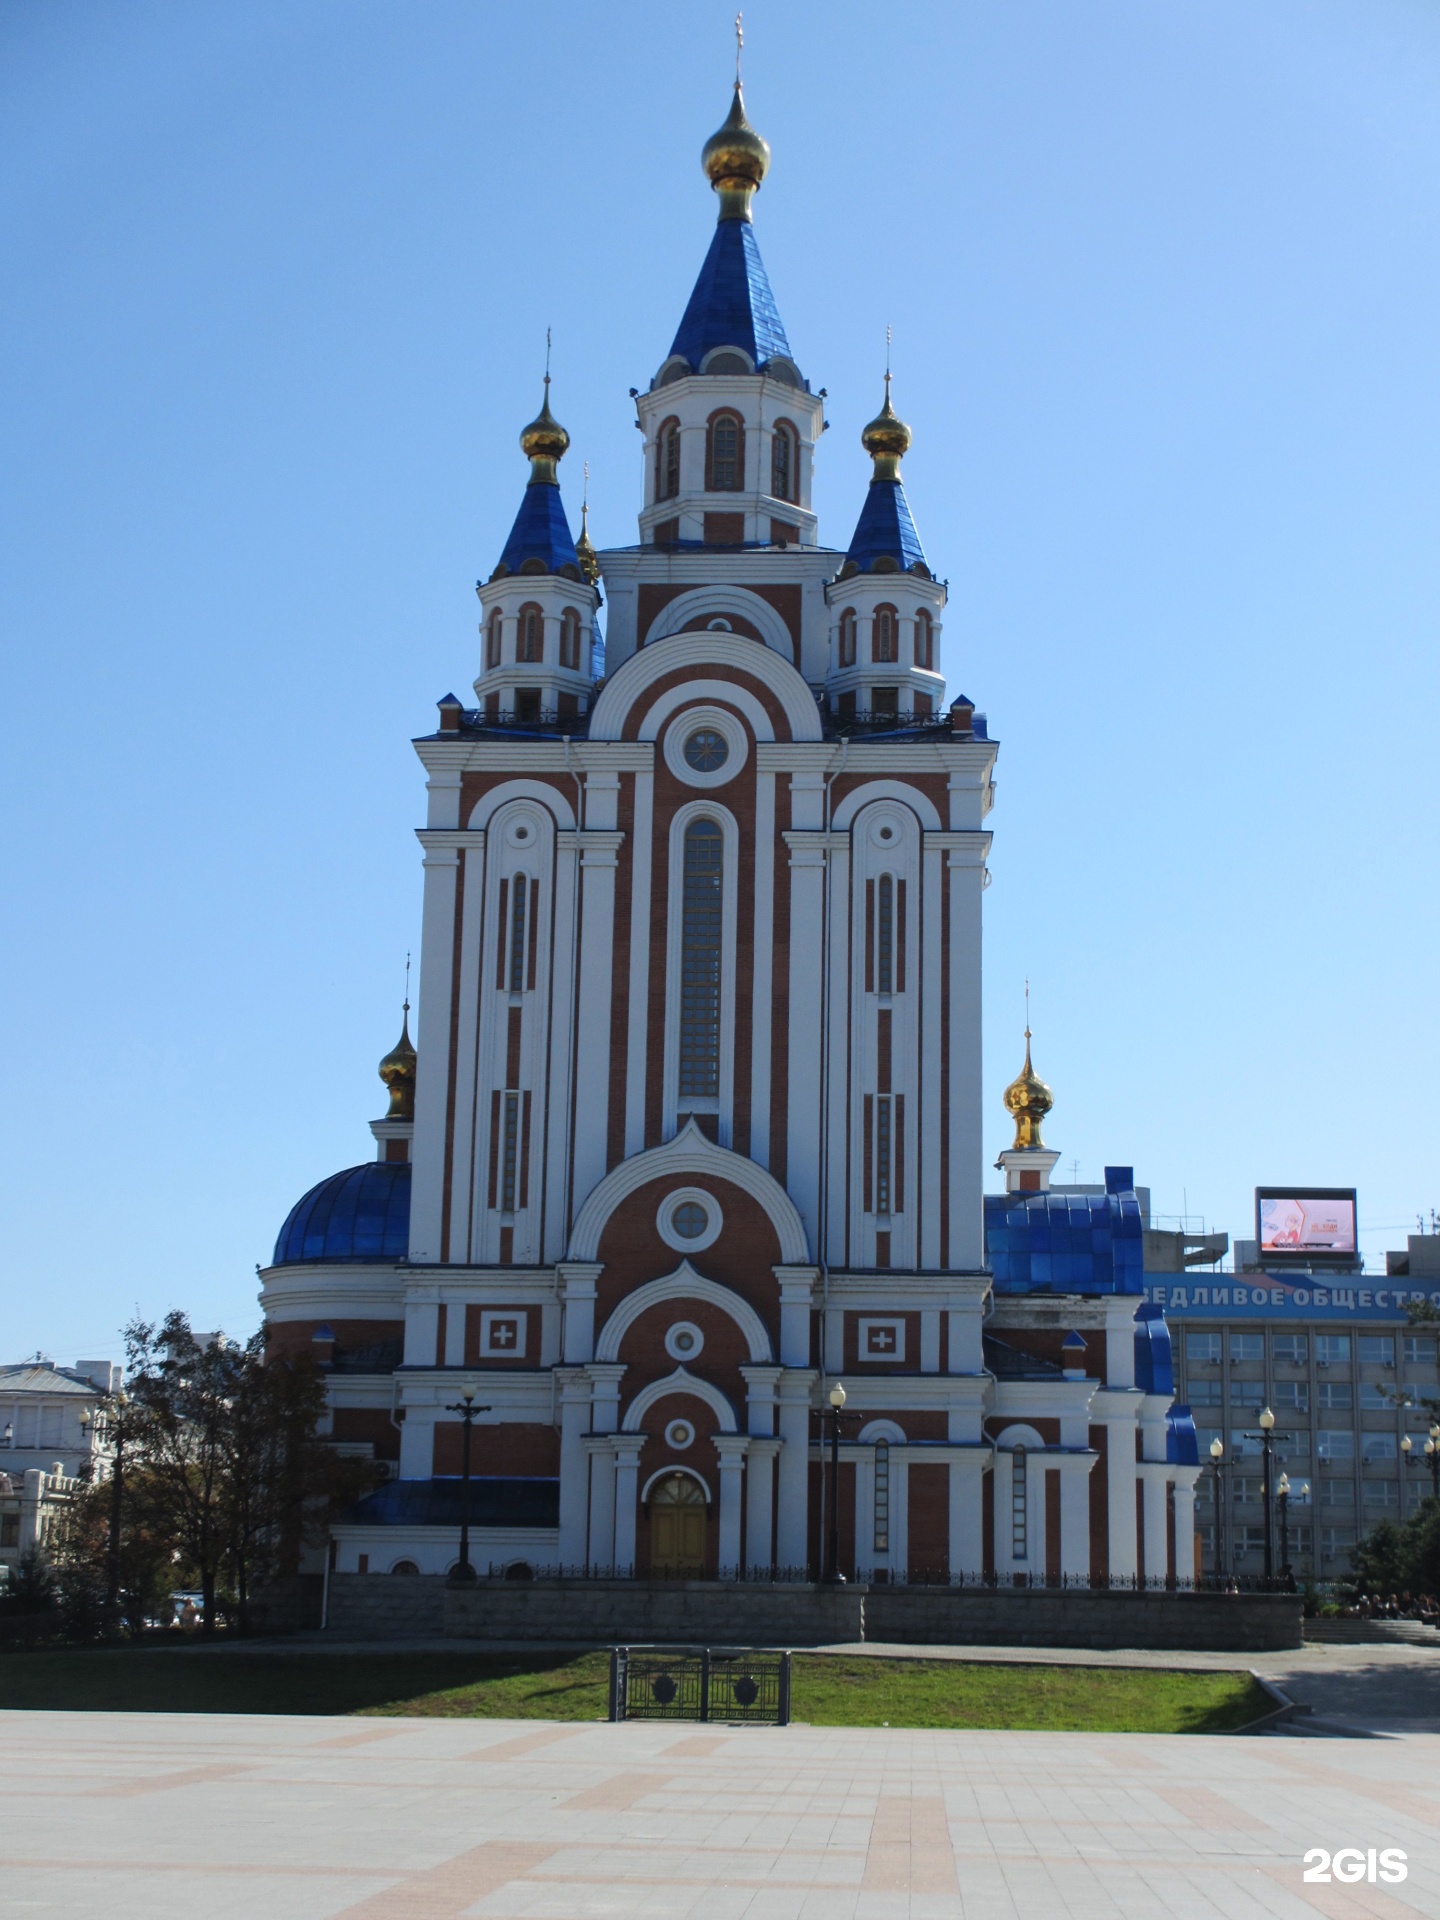 Градо-Хабаровском соборе Успения Божьей матери Хабаровск